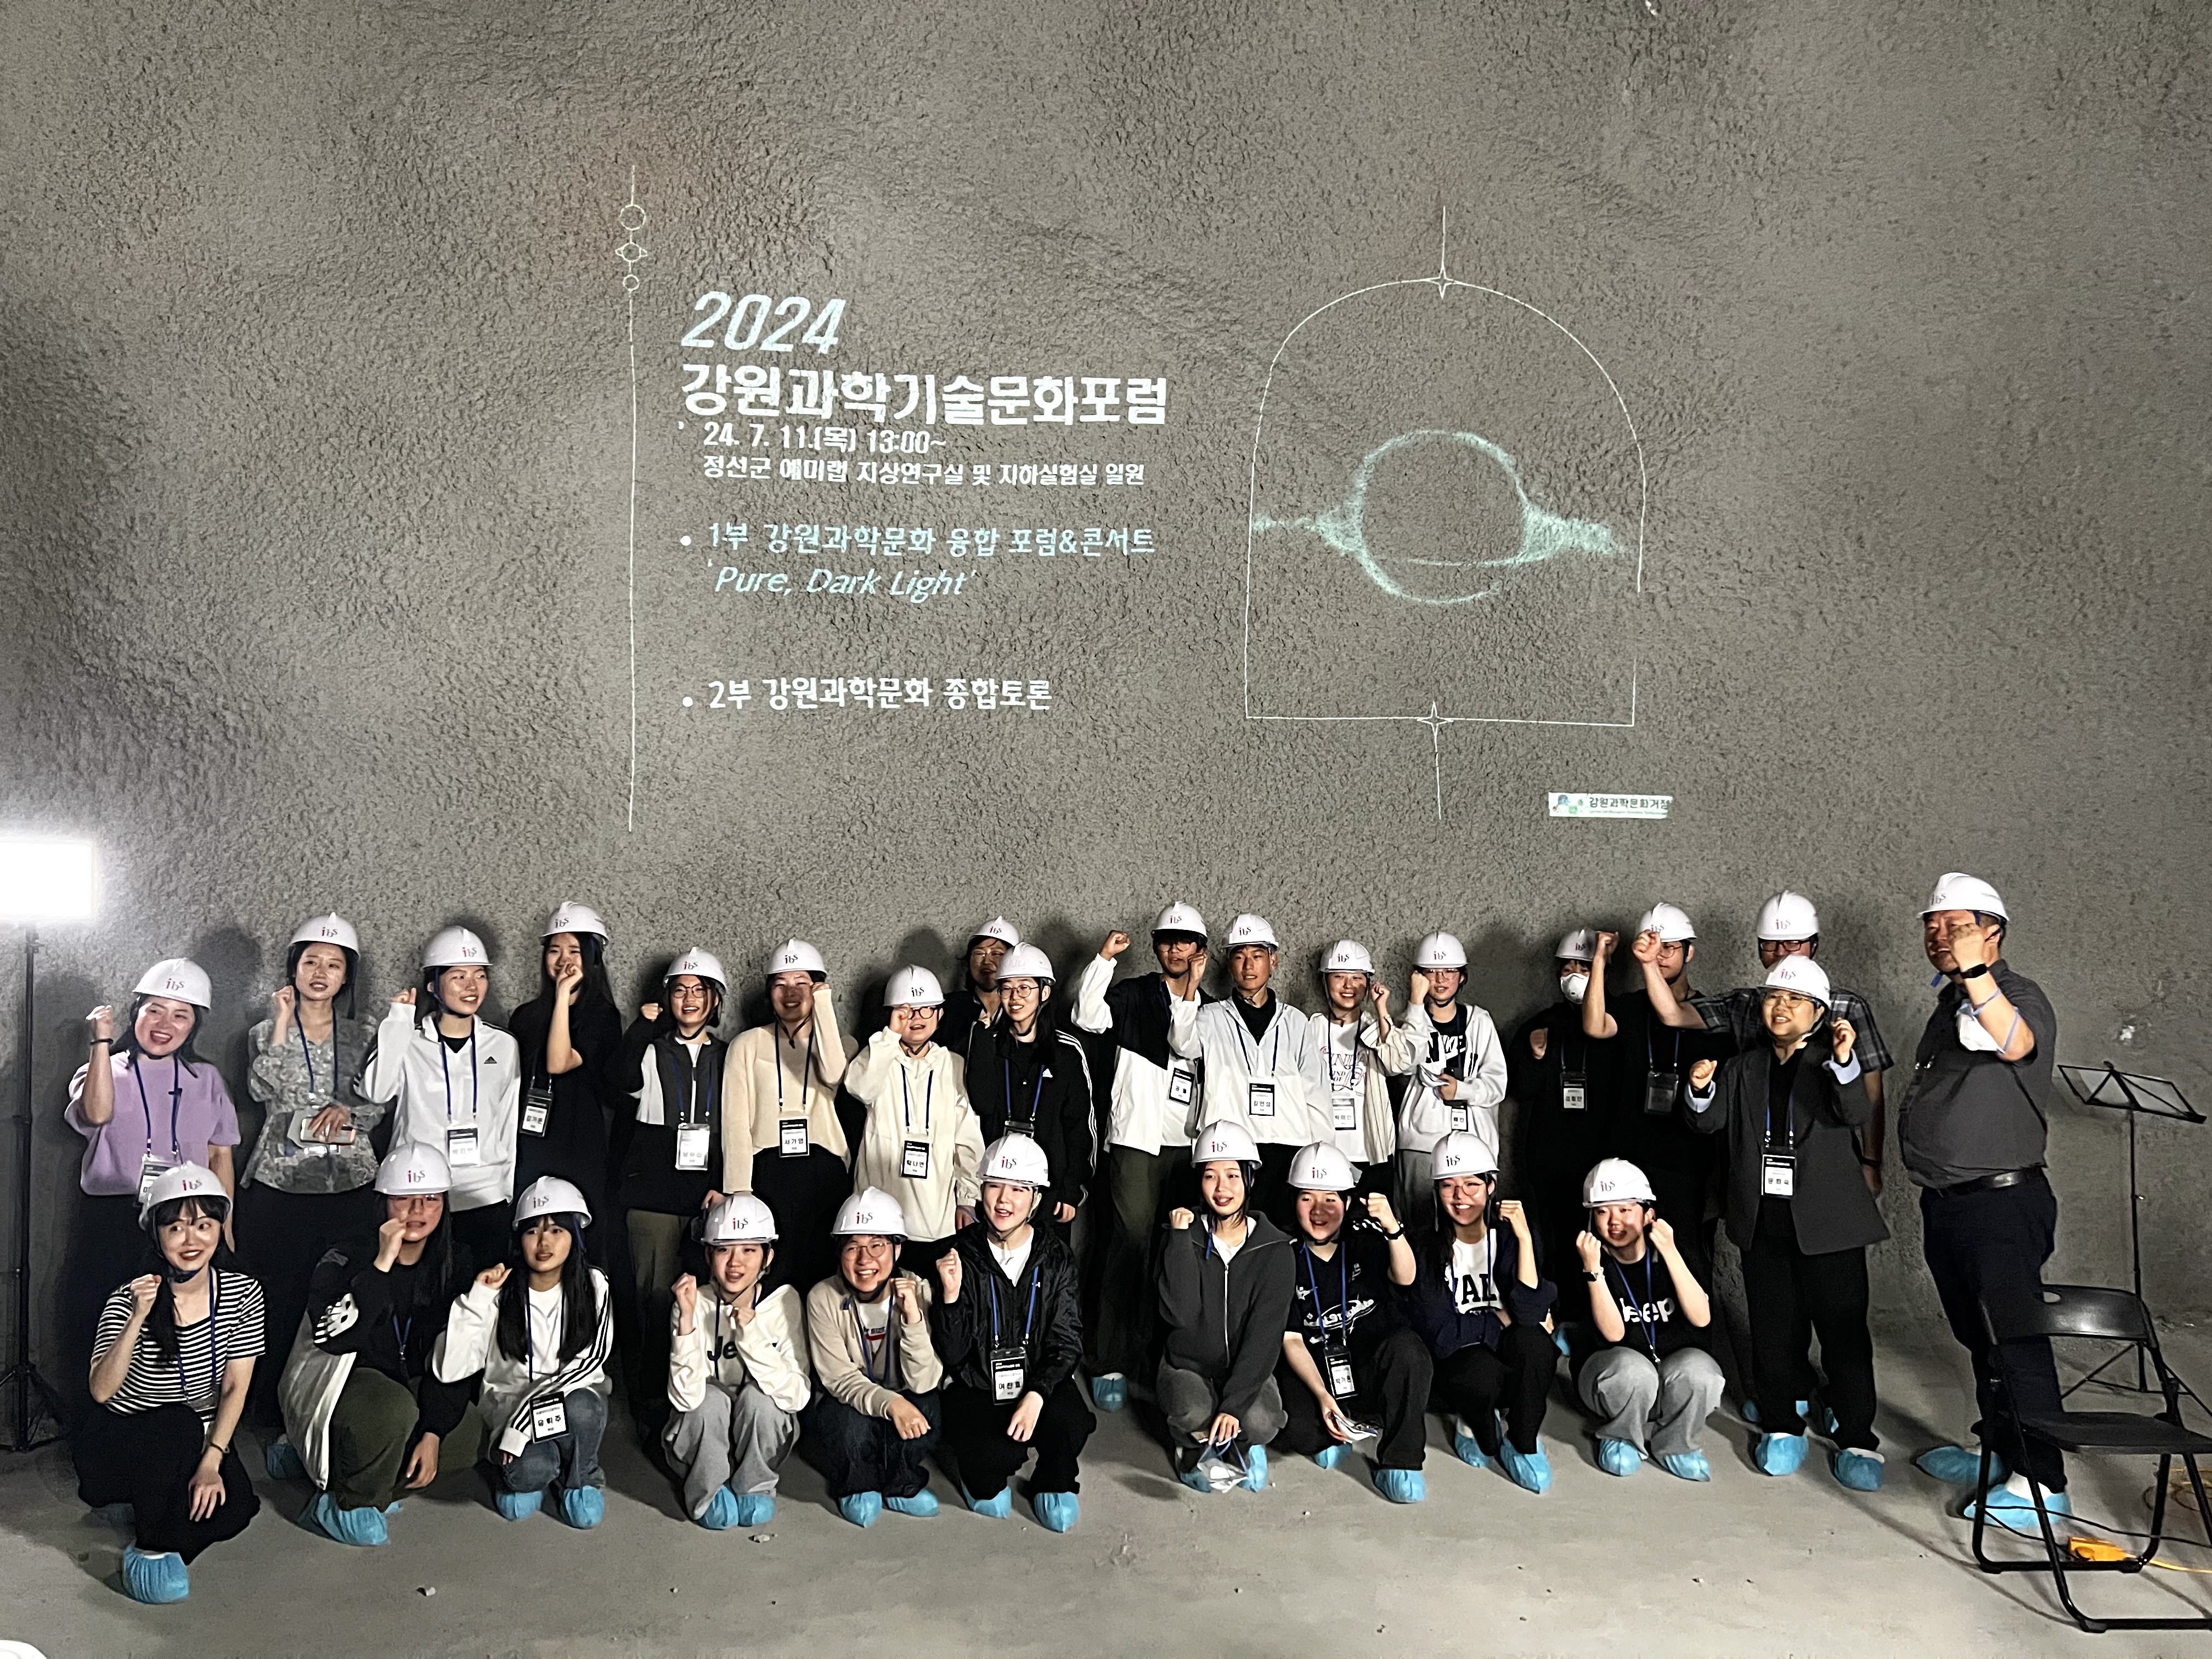 ▲ 예미랩 투어 종료 후 참가자들이 지하 LSC 홀에서 기념사진을 촬영하고 있다.
        